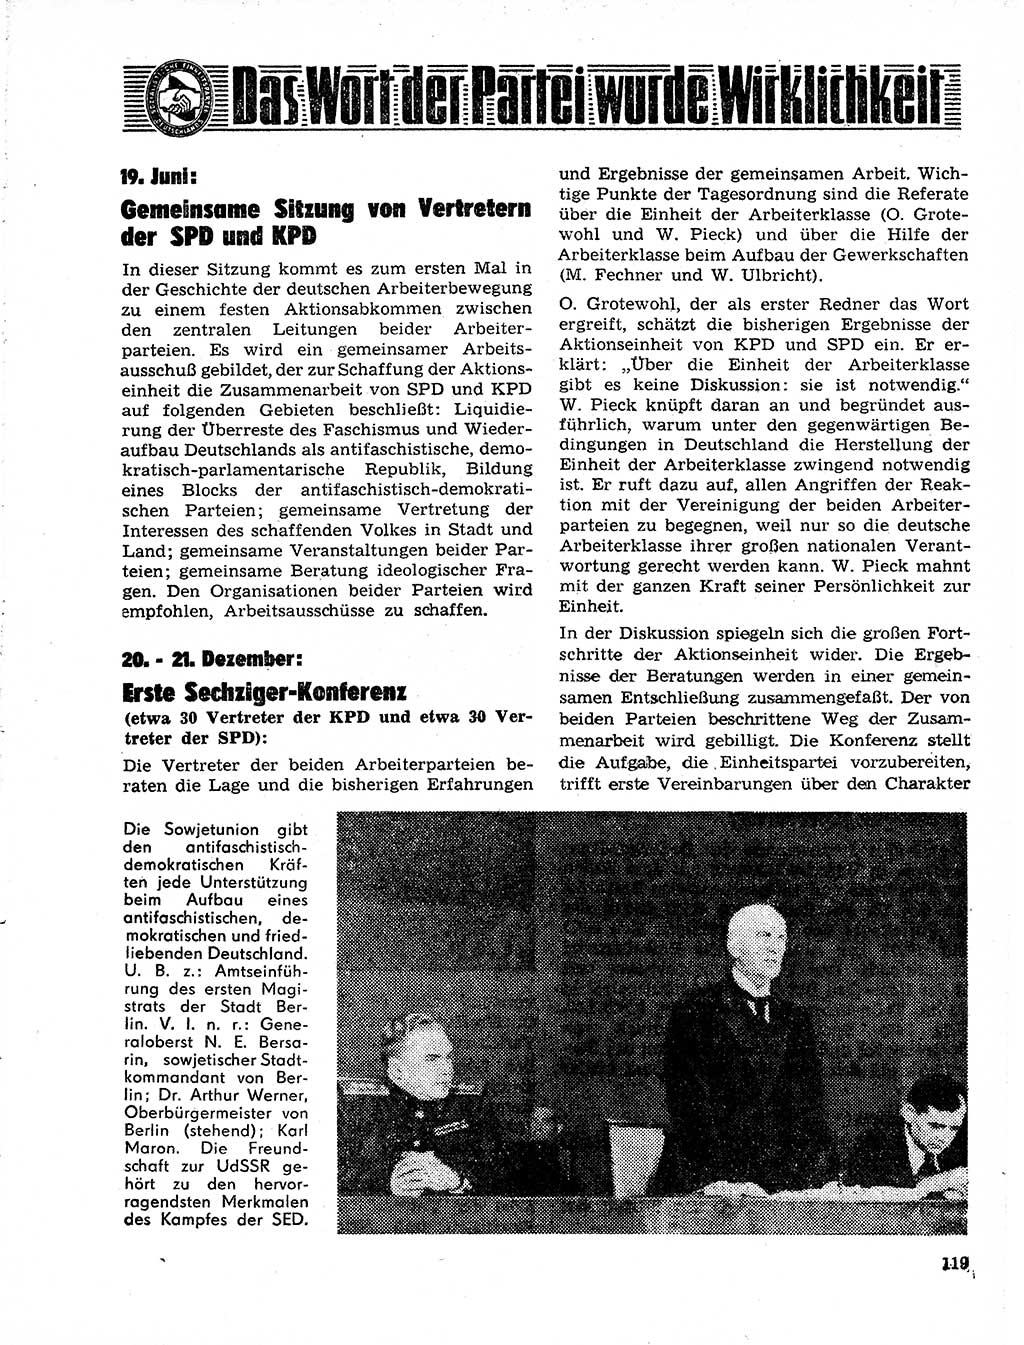 Neuer Weg (NW), Organ des Zentralkomitees (ZK) der SED (Sozialistische Einheitspartei Deutschlands) für Fragen des Parteilebens, 21. Jahrgang [Deutsche Demokratische Republik (DDR)] 1966, Seite 119 (NW ZK SED DDR 1966, S. 119)